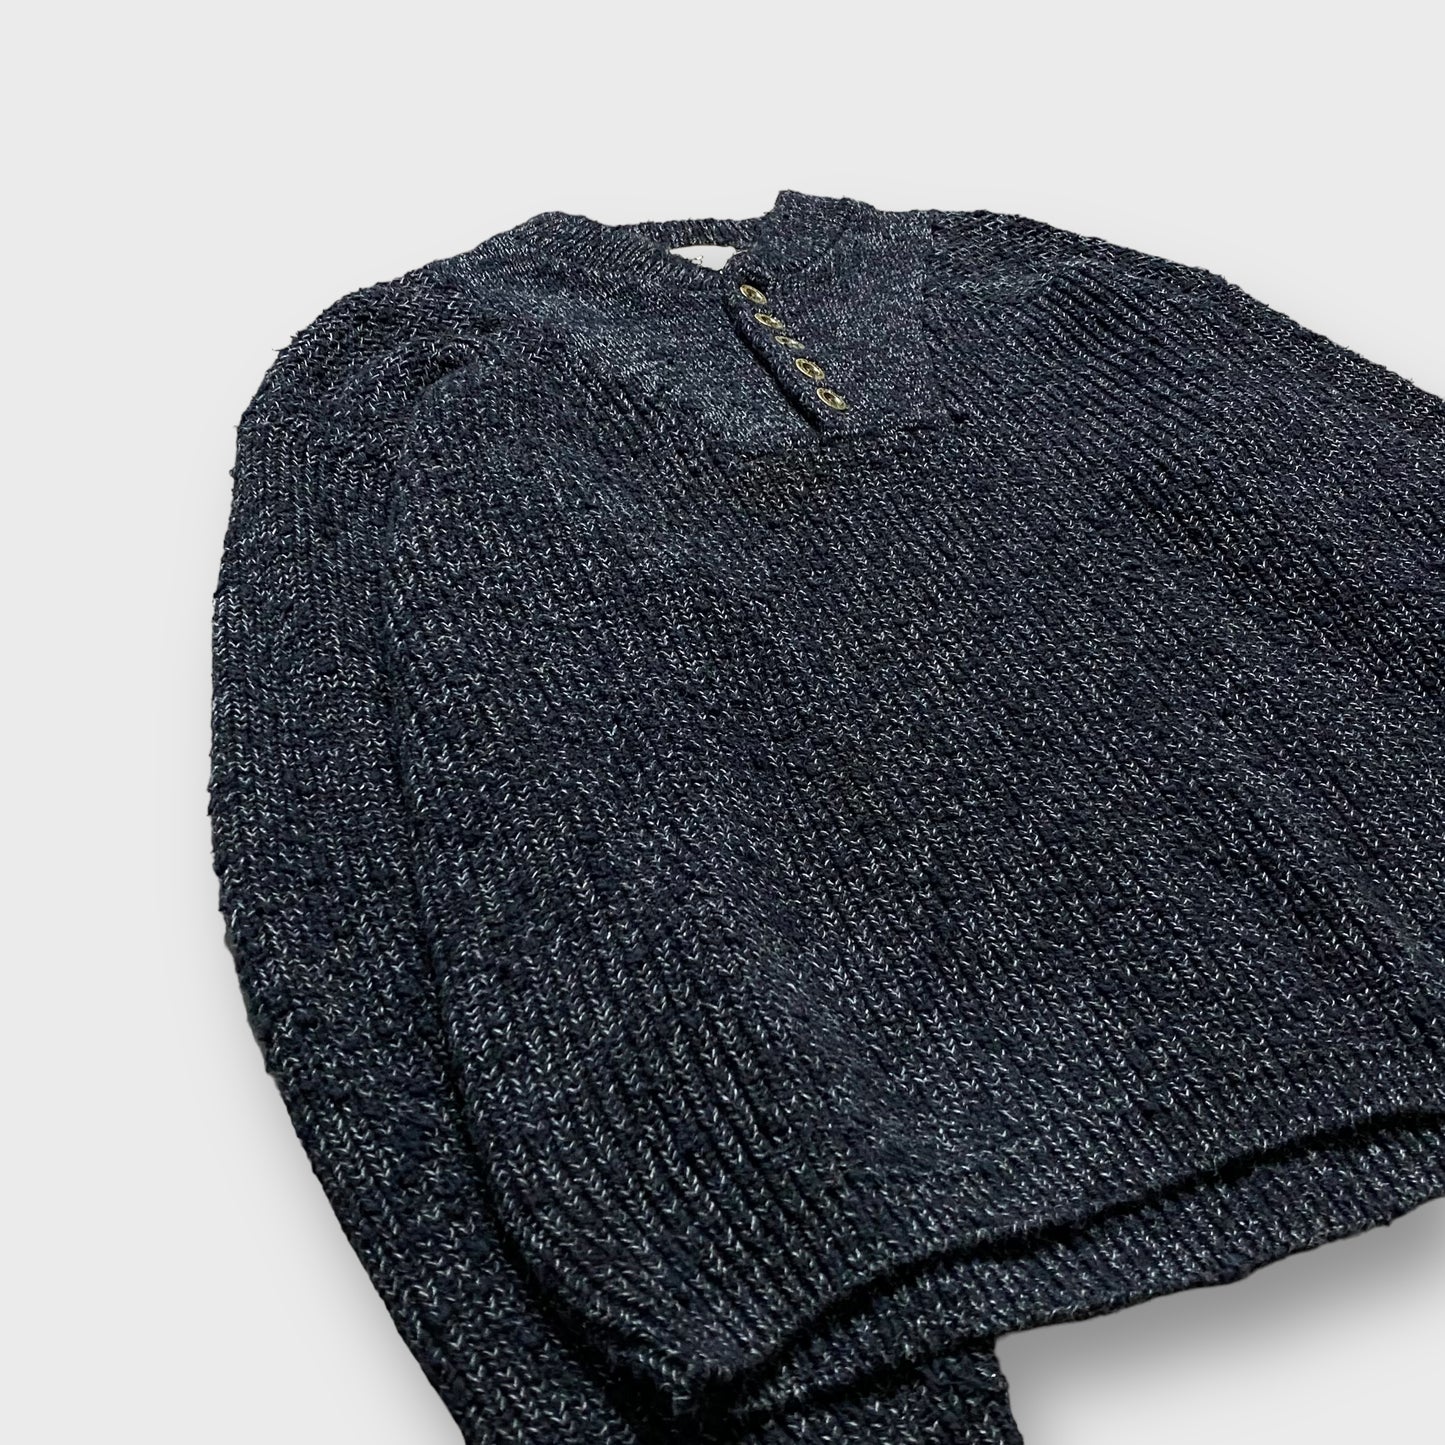 90's "Eddie Bauer" Henry neck knit sweater